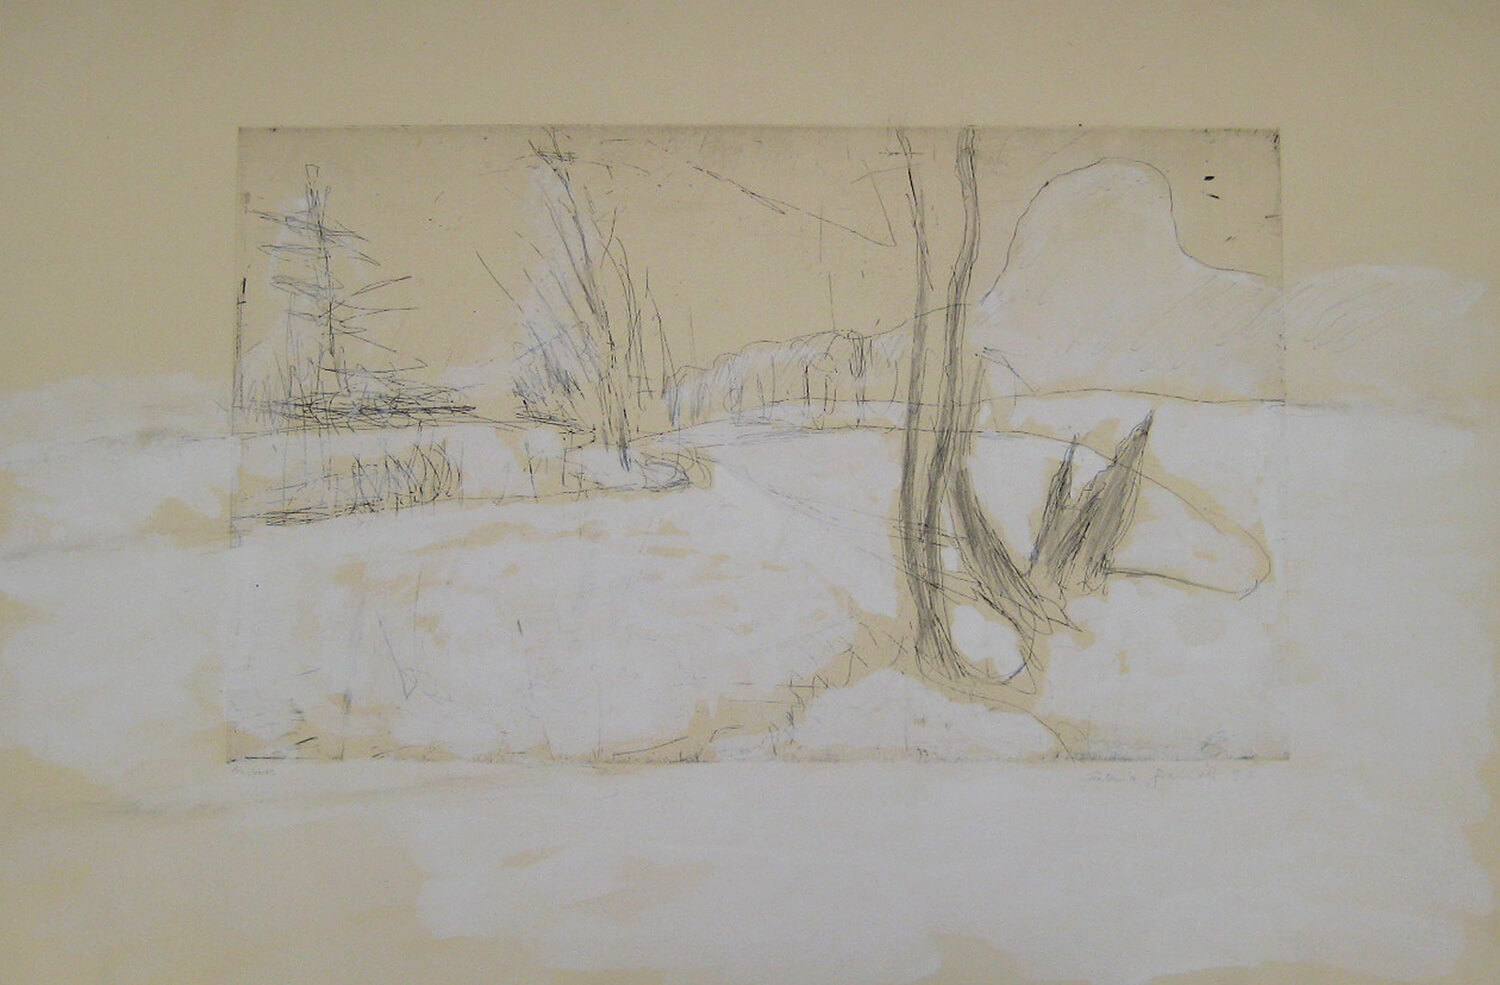 Sabina Grzimek, Snowy Spree Landscape, 1997, etching with white wash, 53 x 78.50 cm